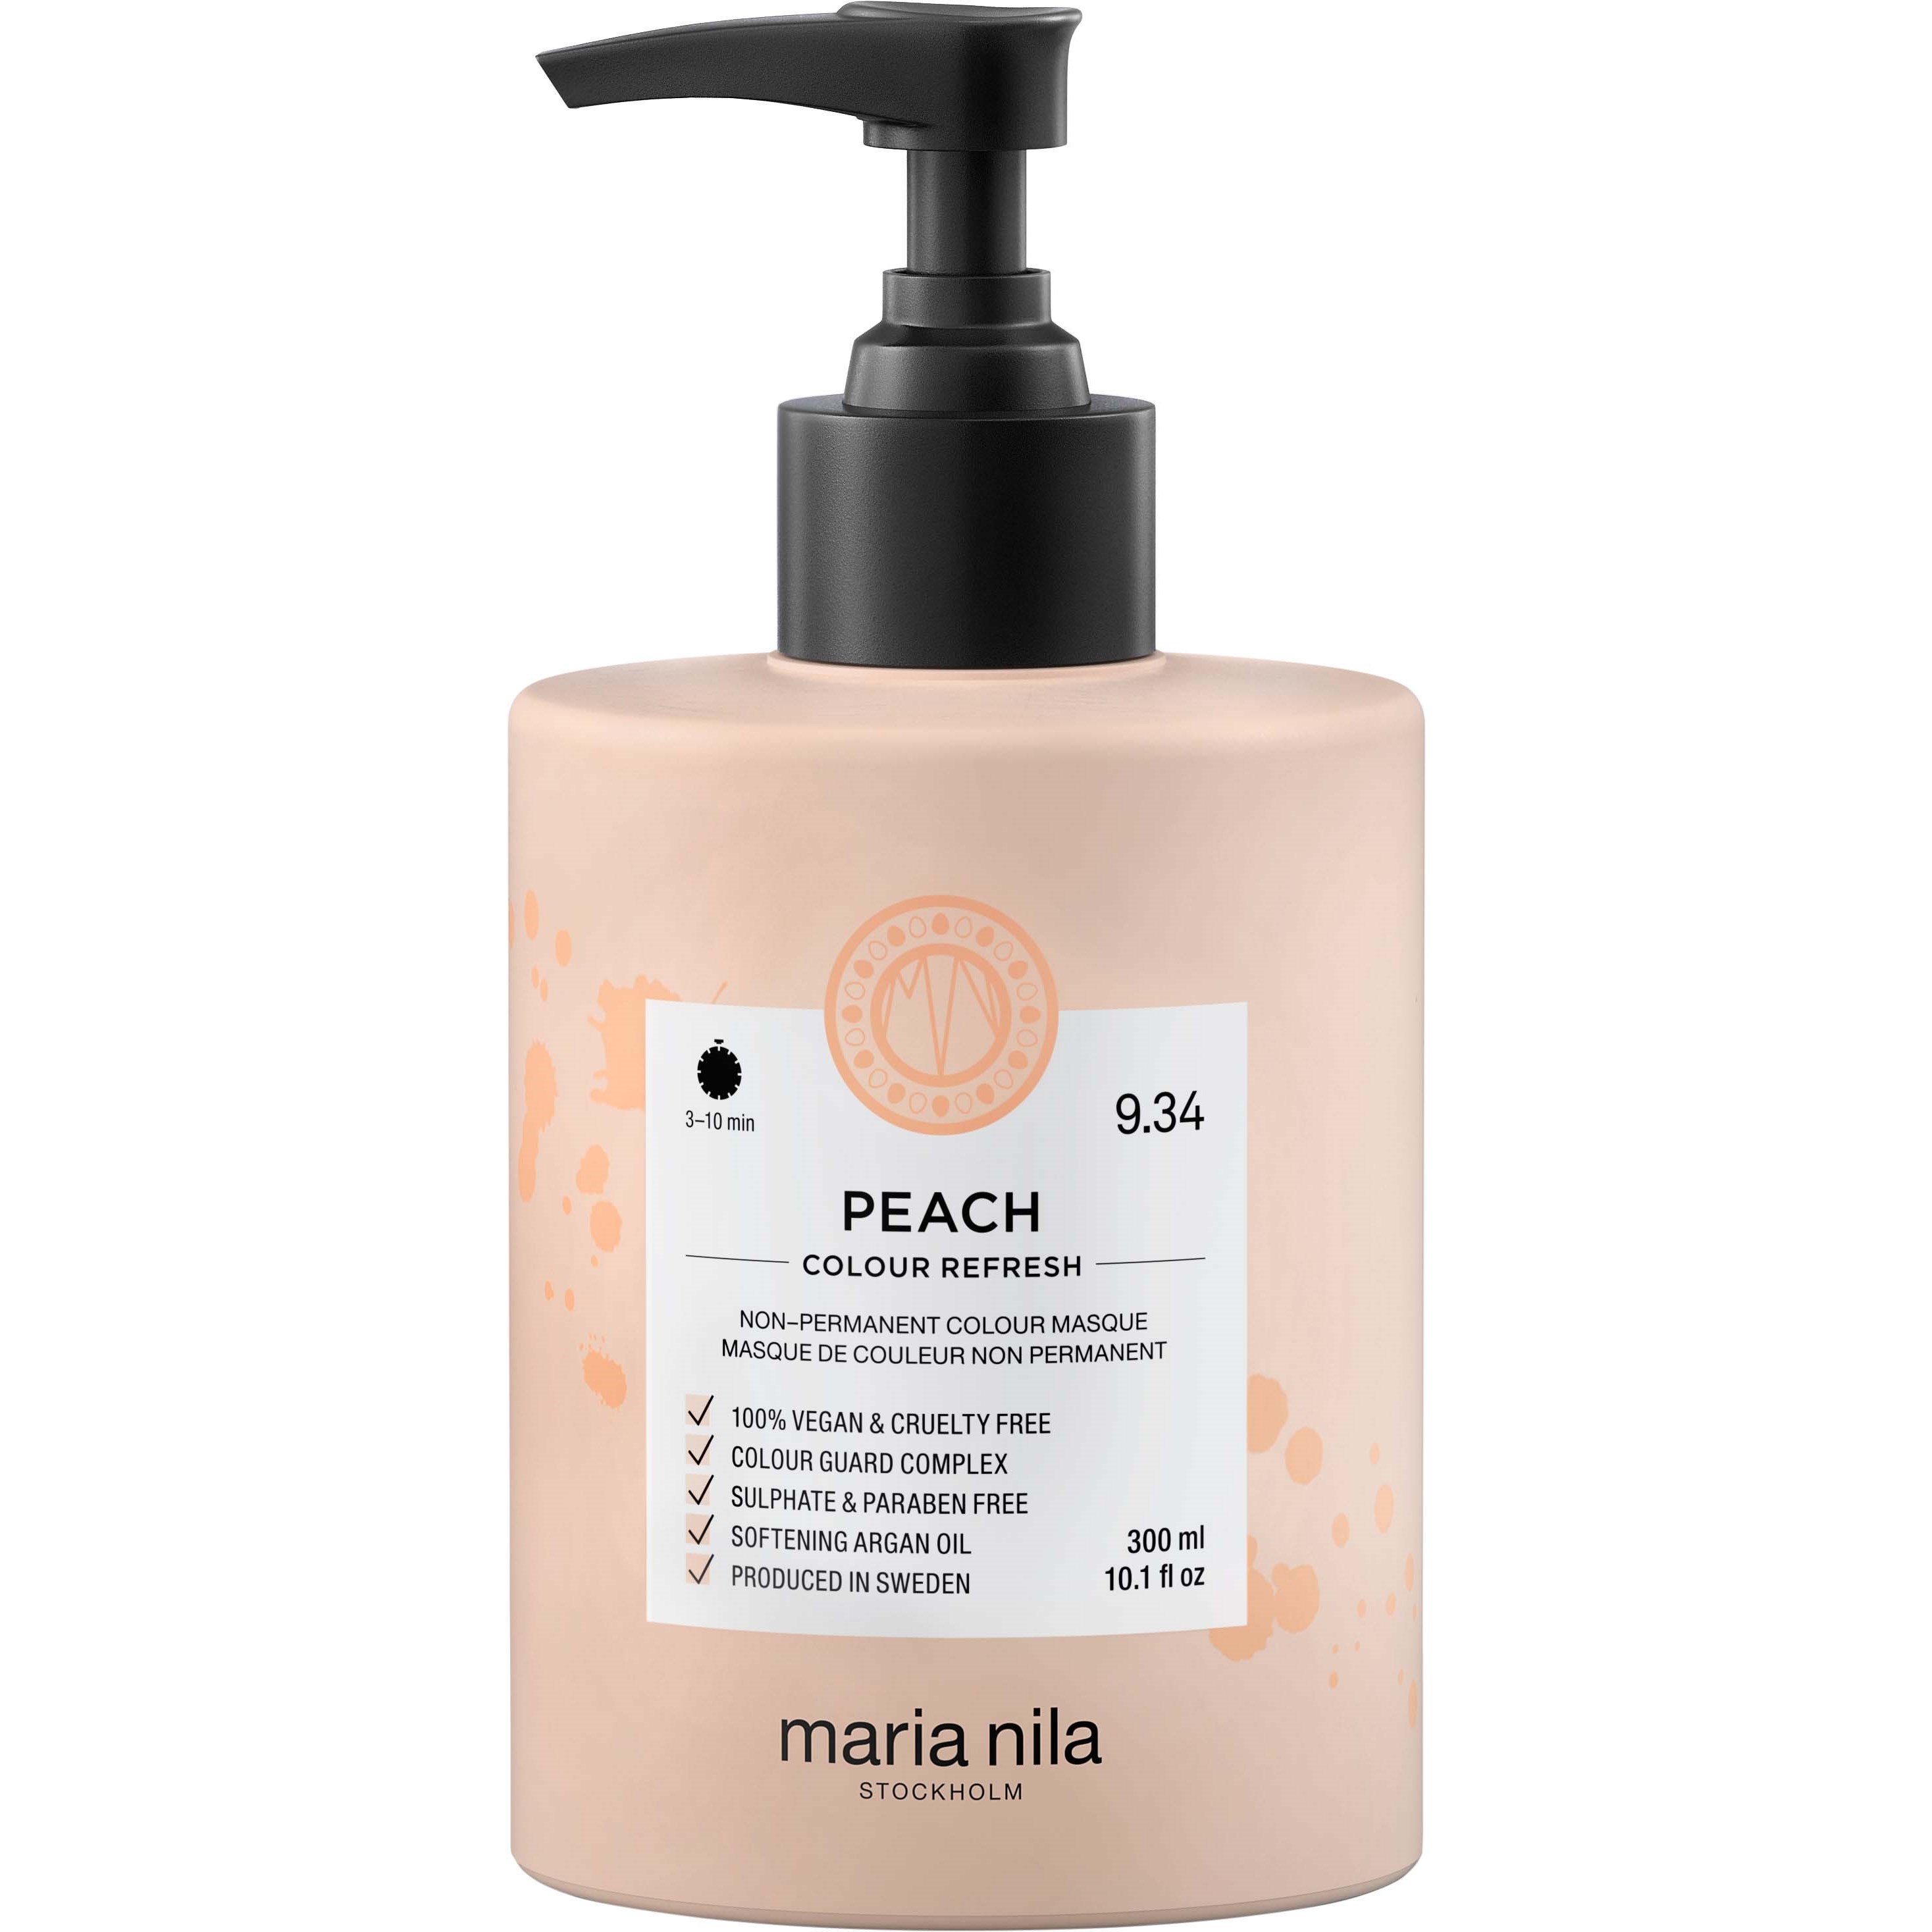 Maria Nila Colour Refresh Peach, 300ml